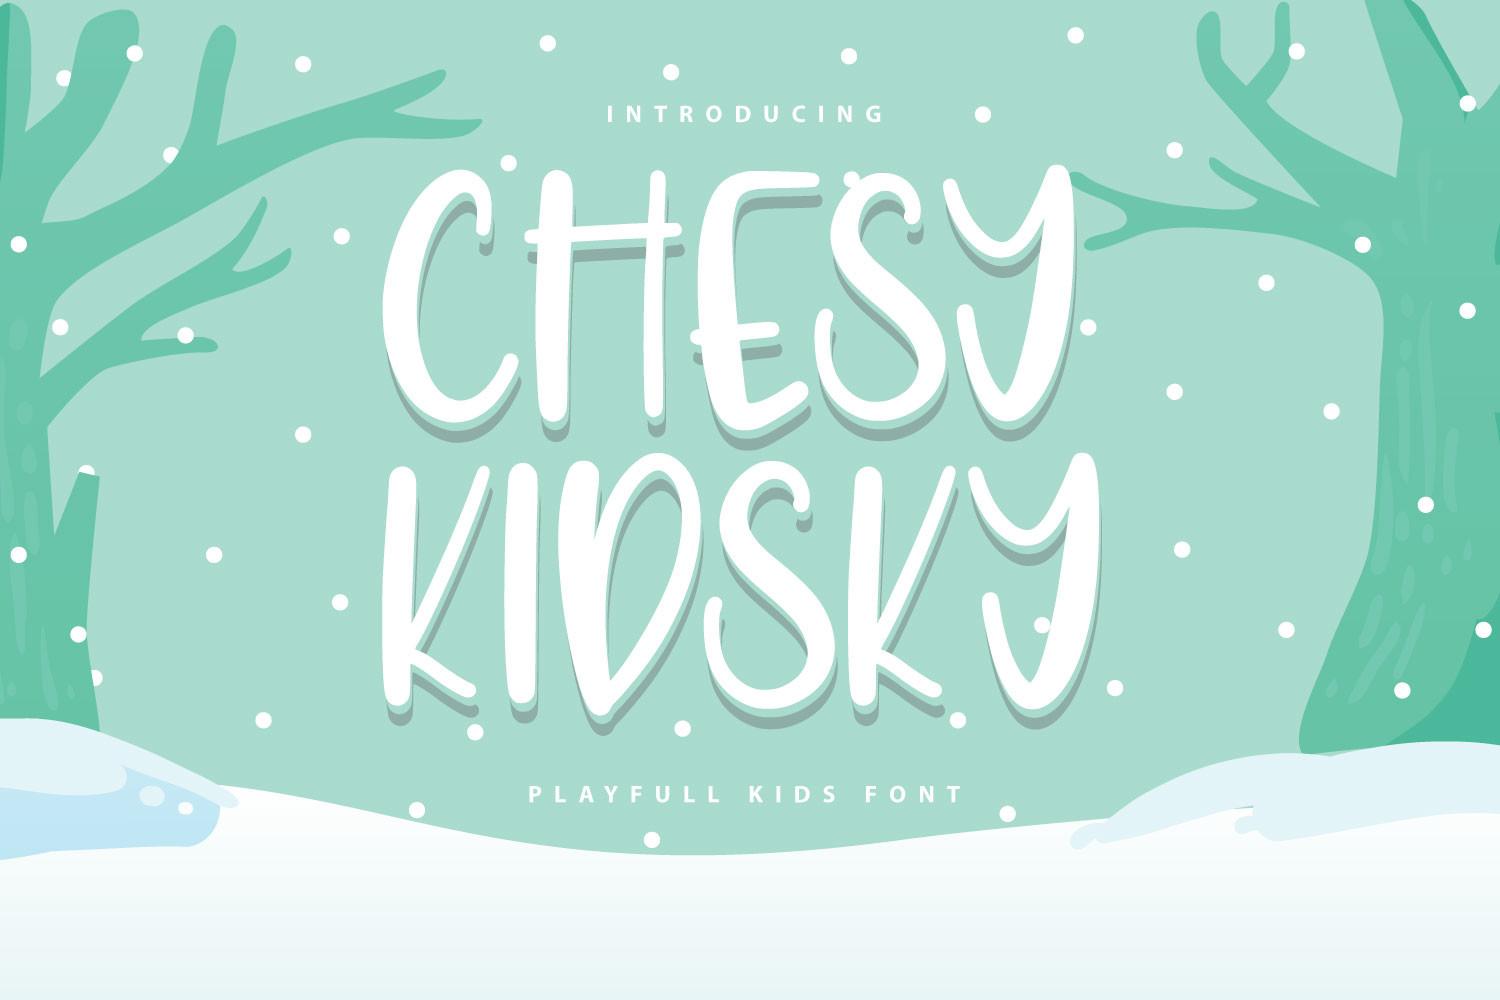 Chesy Kidsky Font